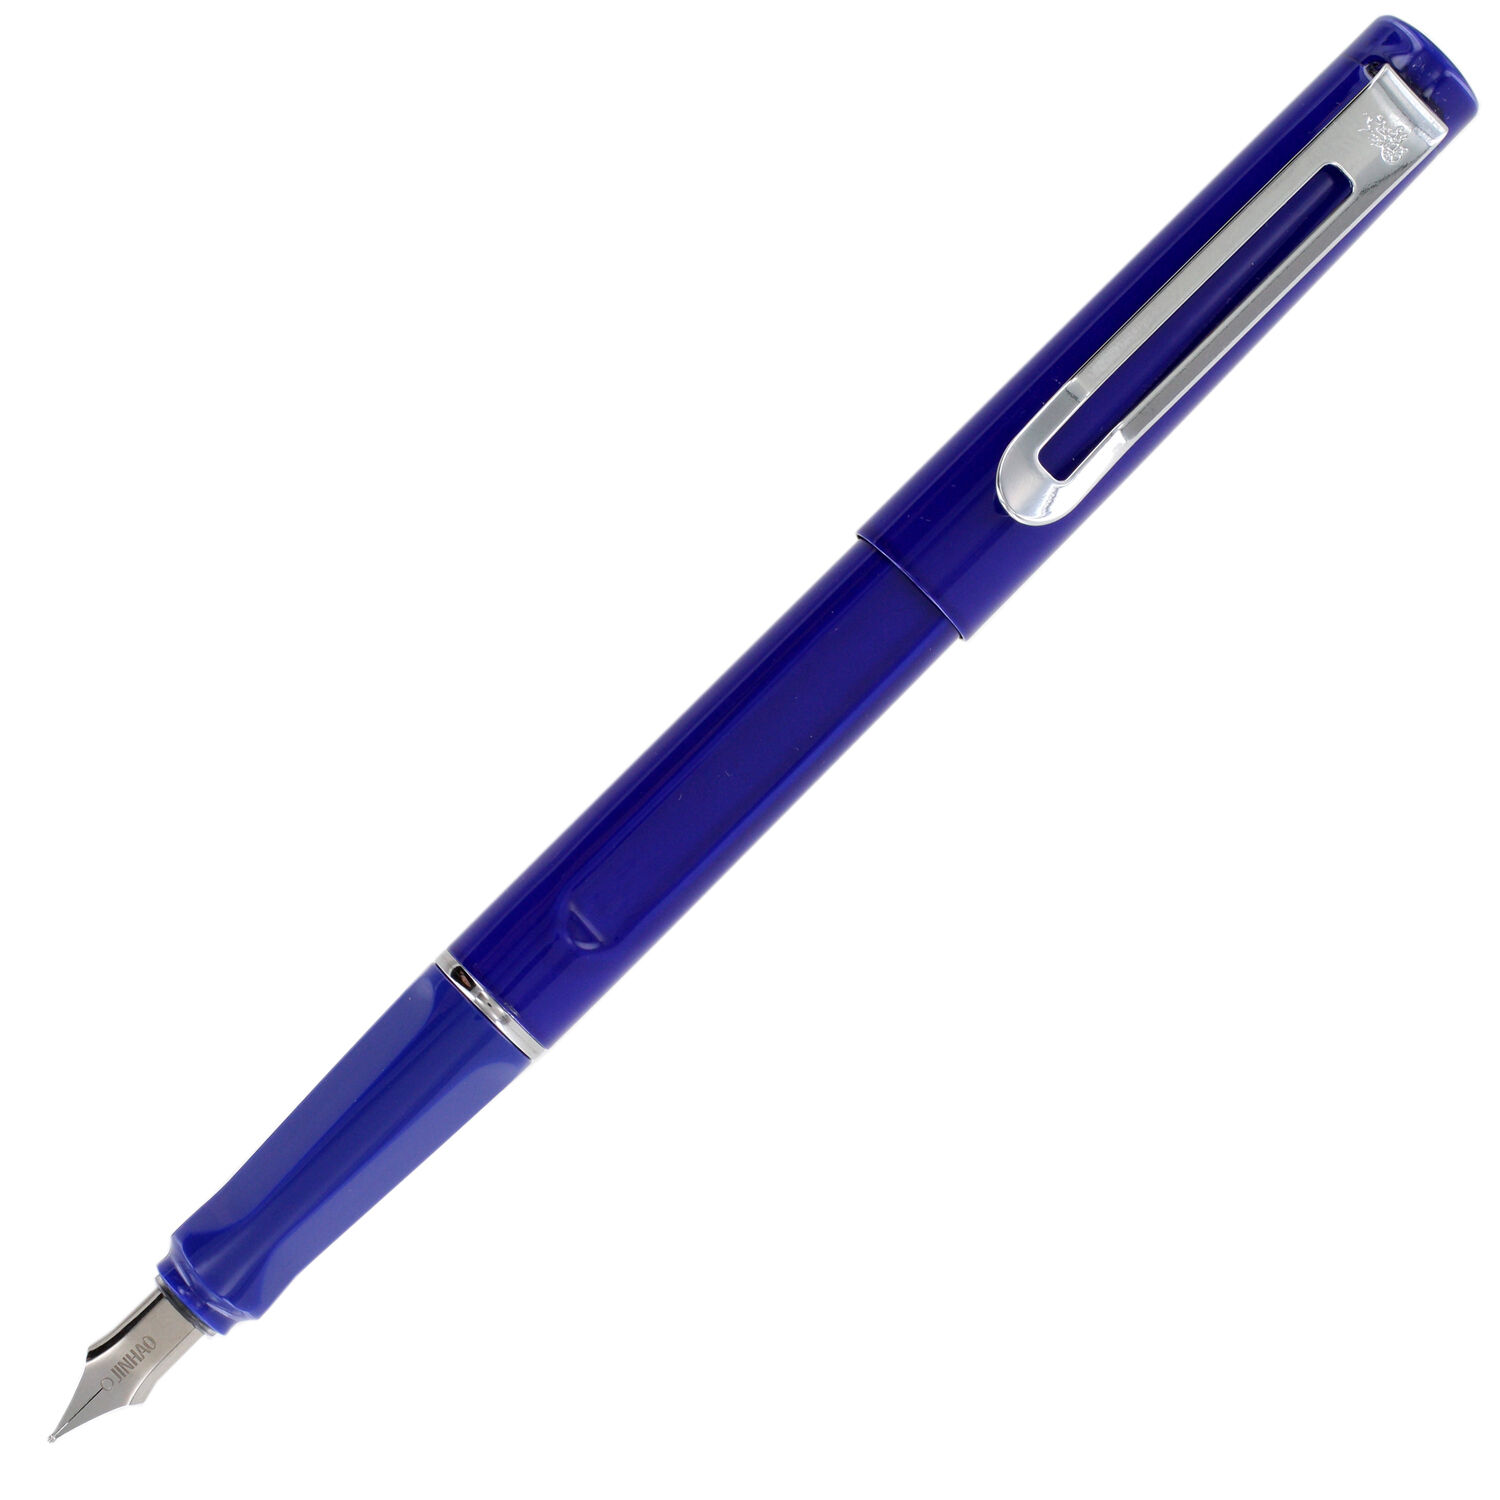 JinHao FP-599 Metal Fountain Pen, Blue, Medium Nib (FP-599-5)